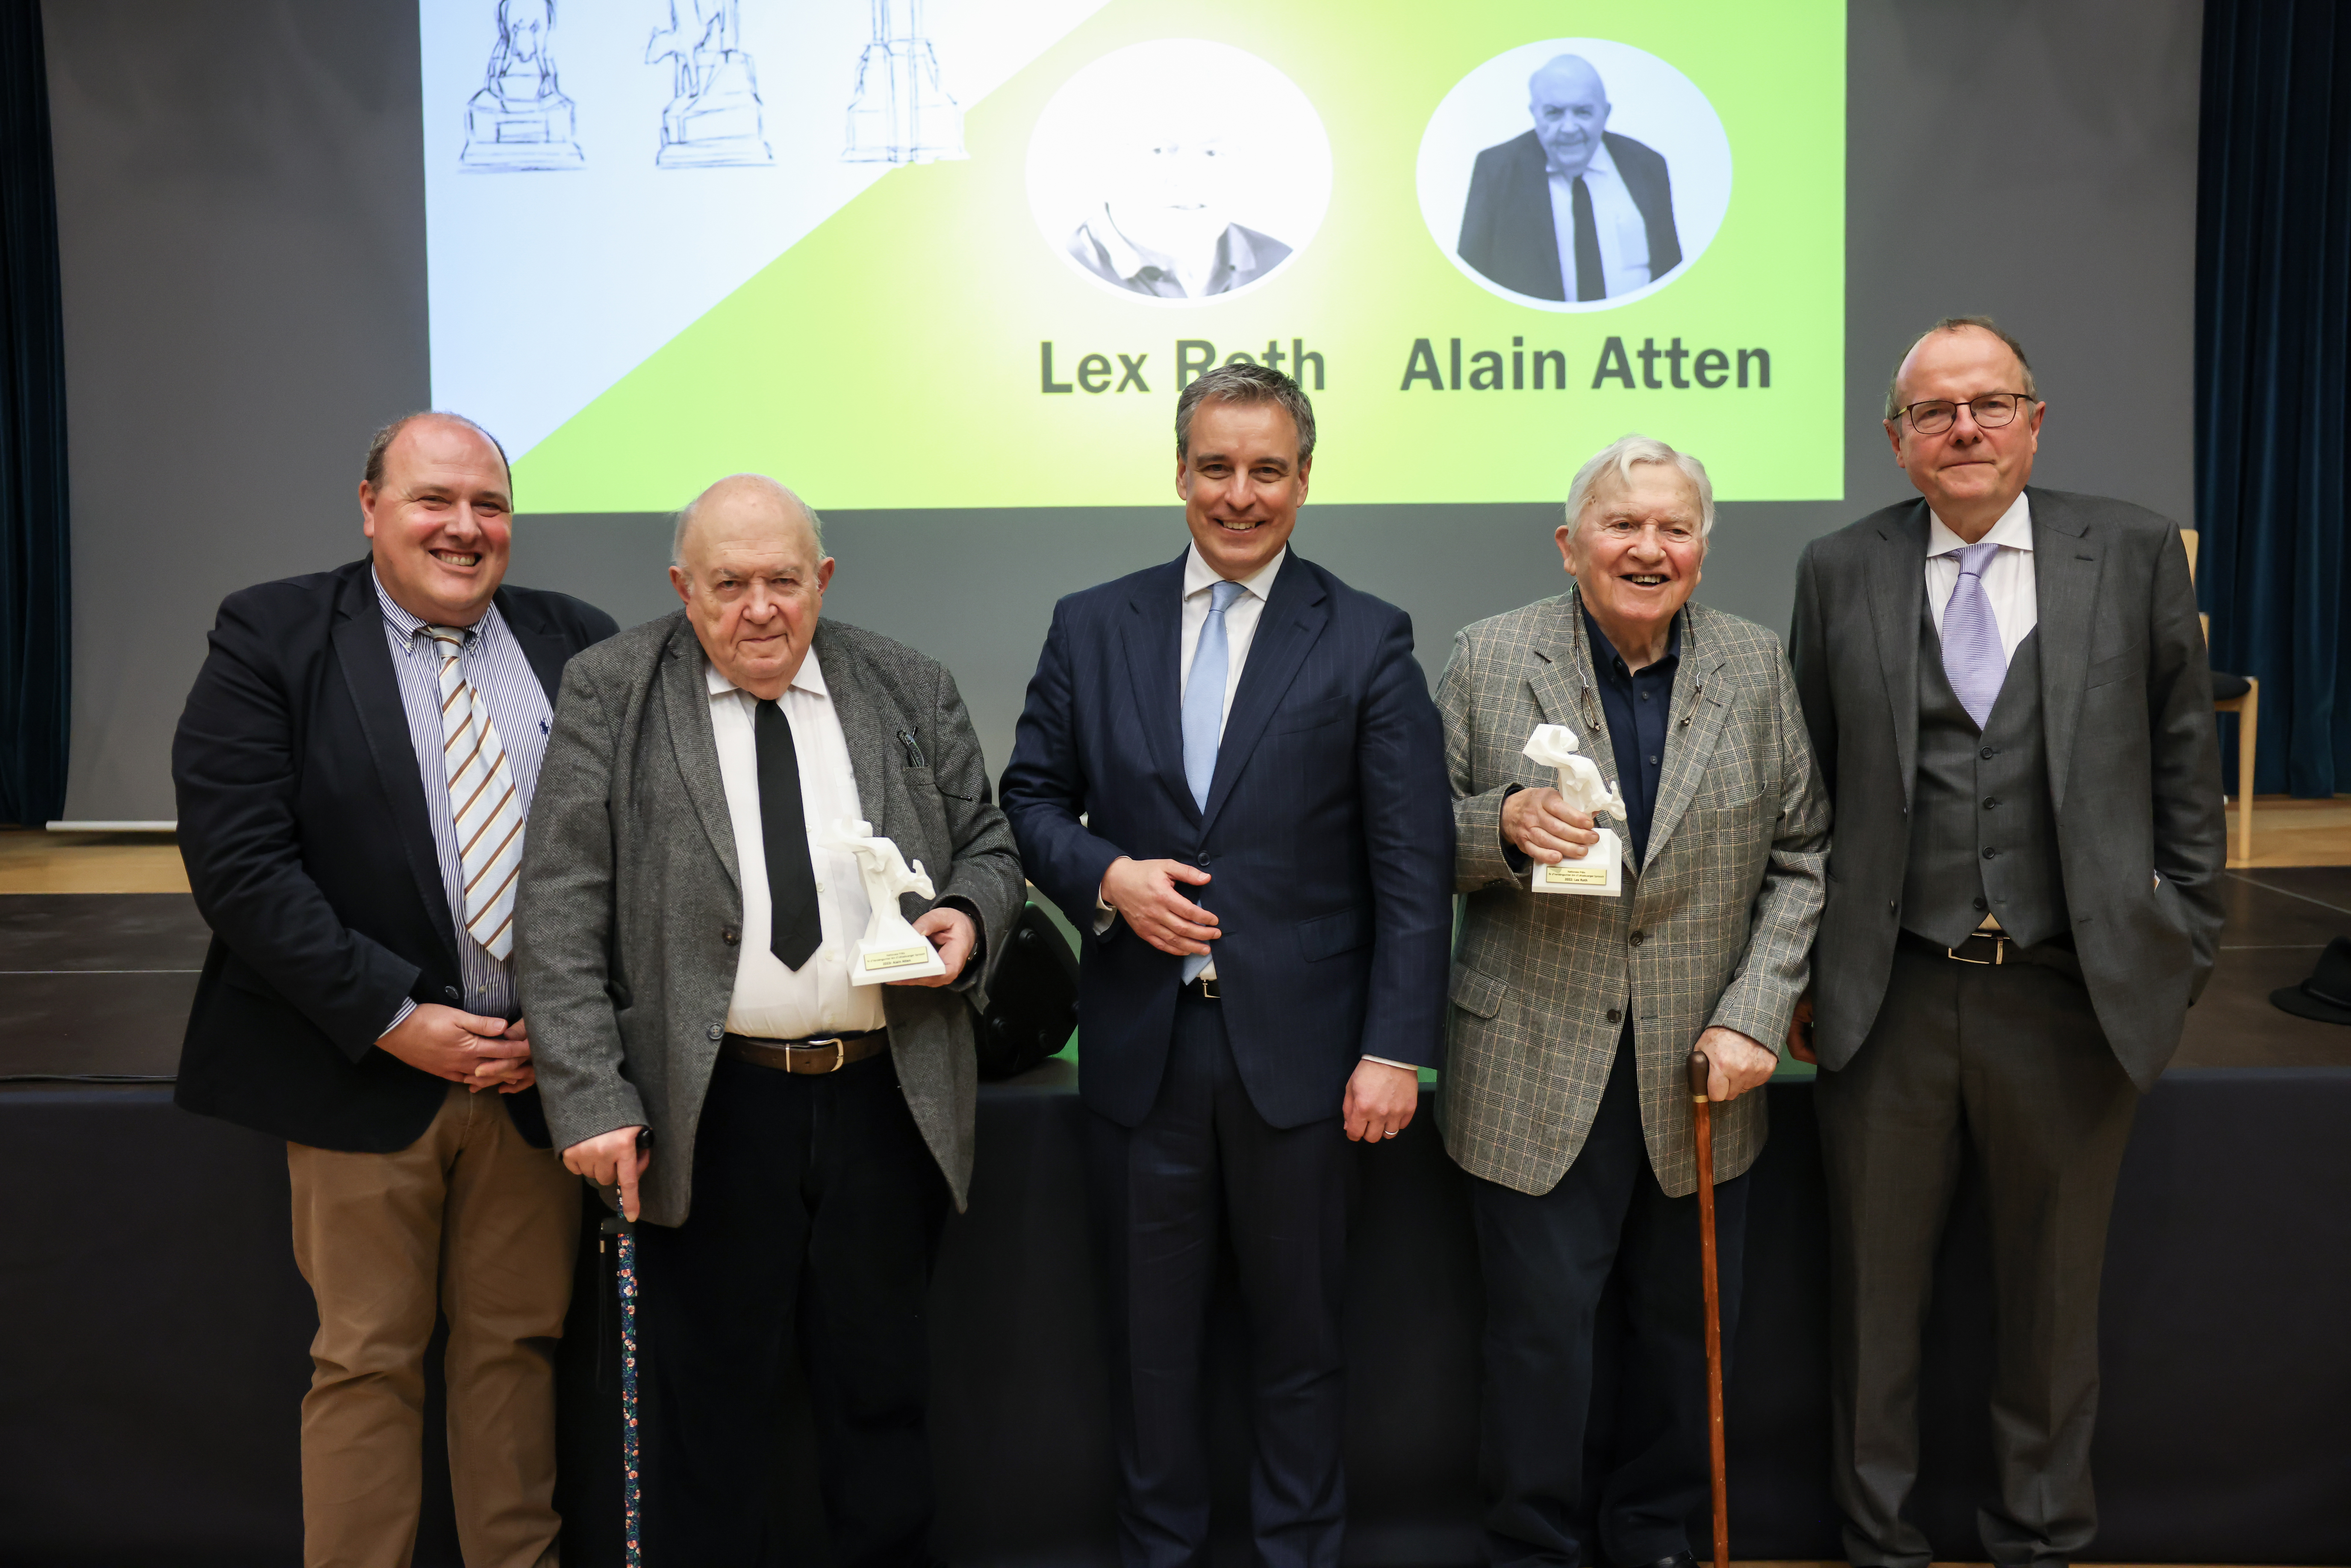 Pierre Reding, Alain Atten, Claude Meisch, Lex Roth, Marc Barthelemy